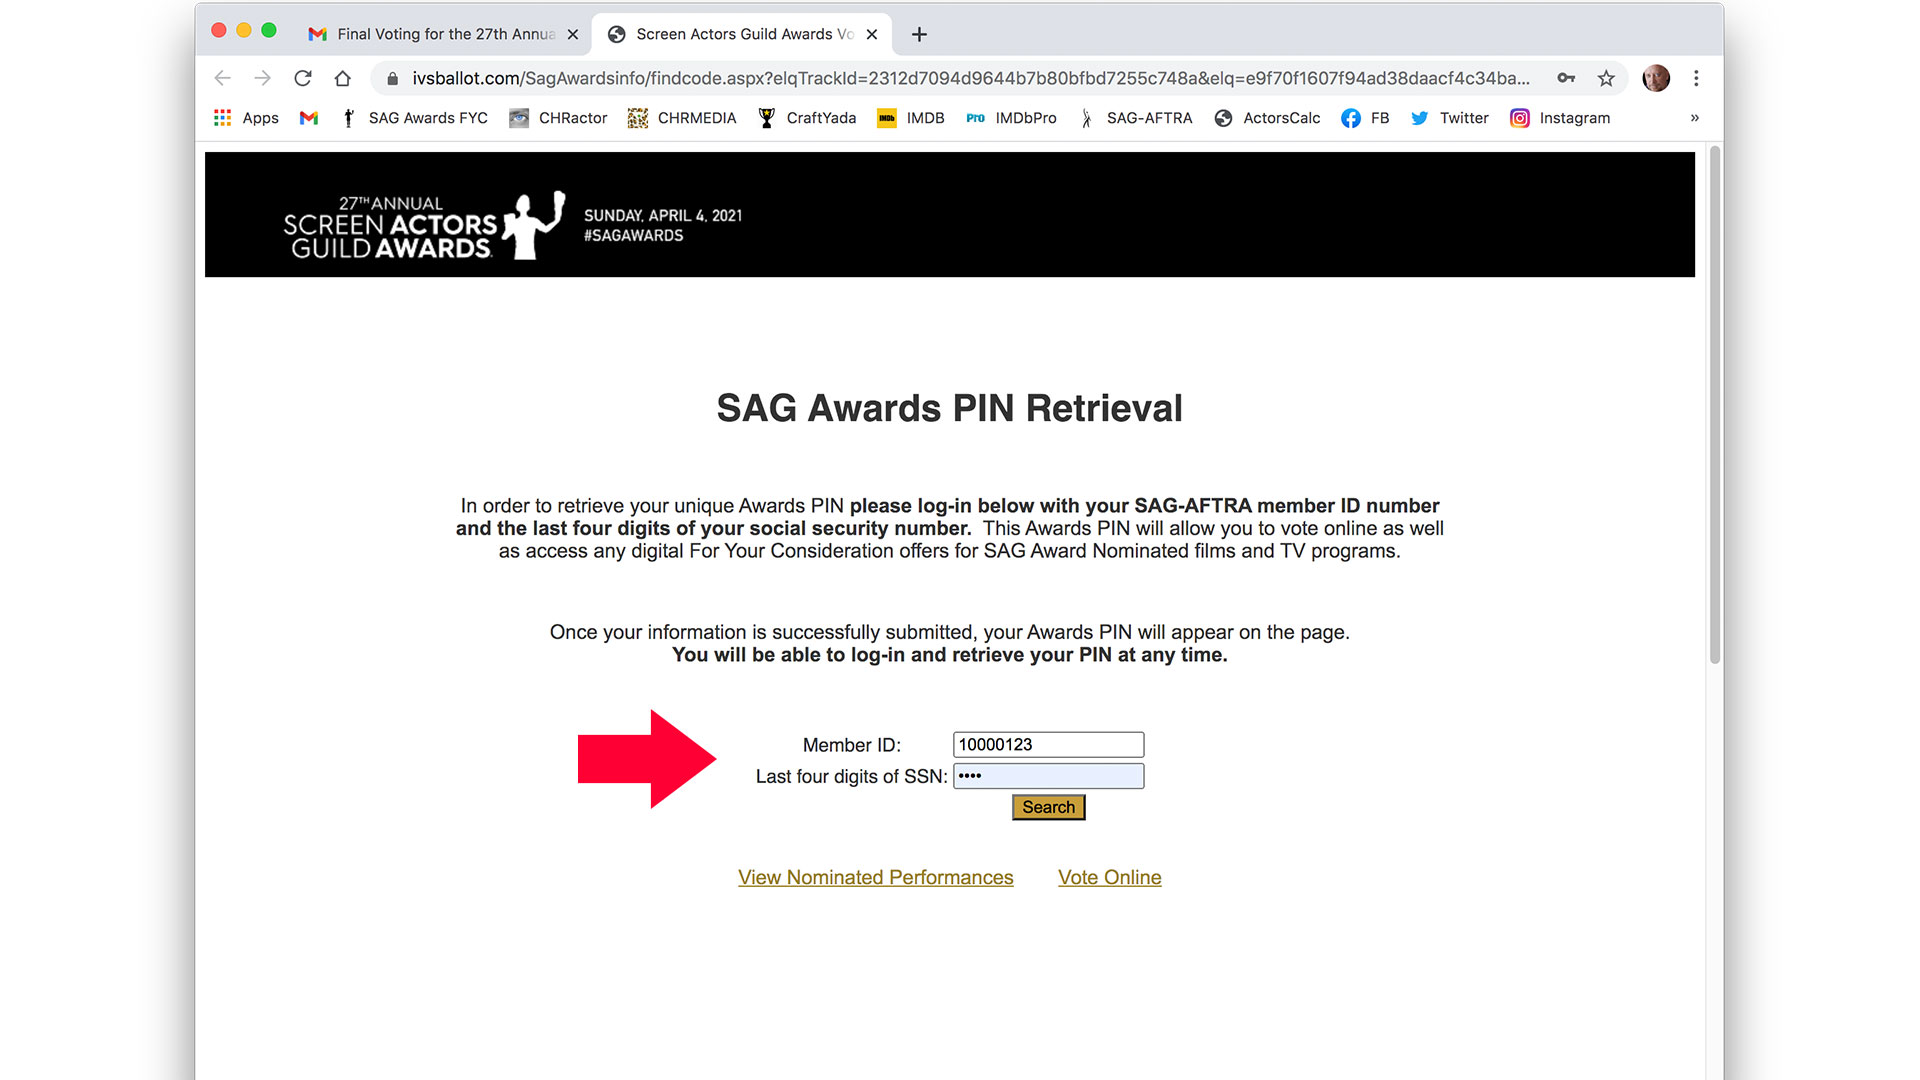 SAG Awards PIN Retrieval page